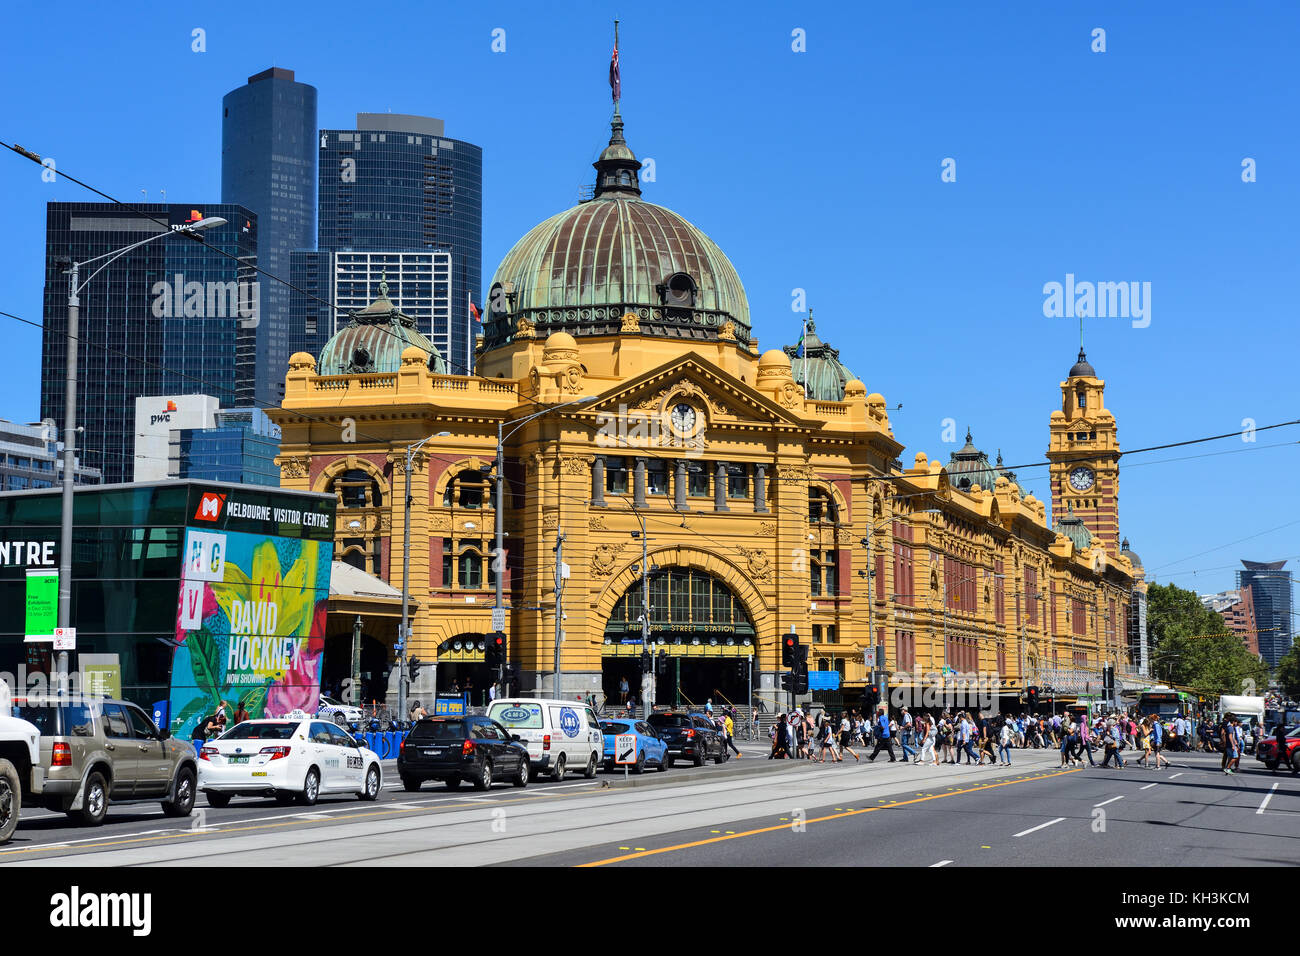 La gare de Flinders Street à l'angle de Flinders et swanston rues de Melbourne, Victoria, Australie Banque D'Images